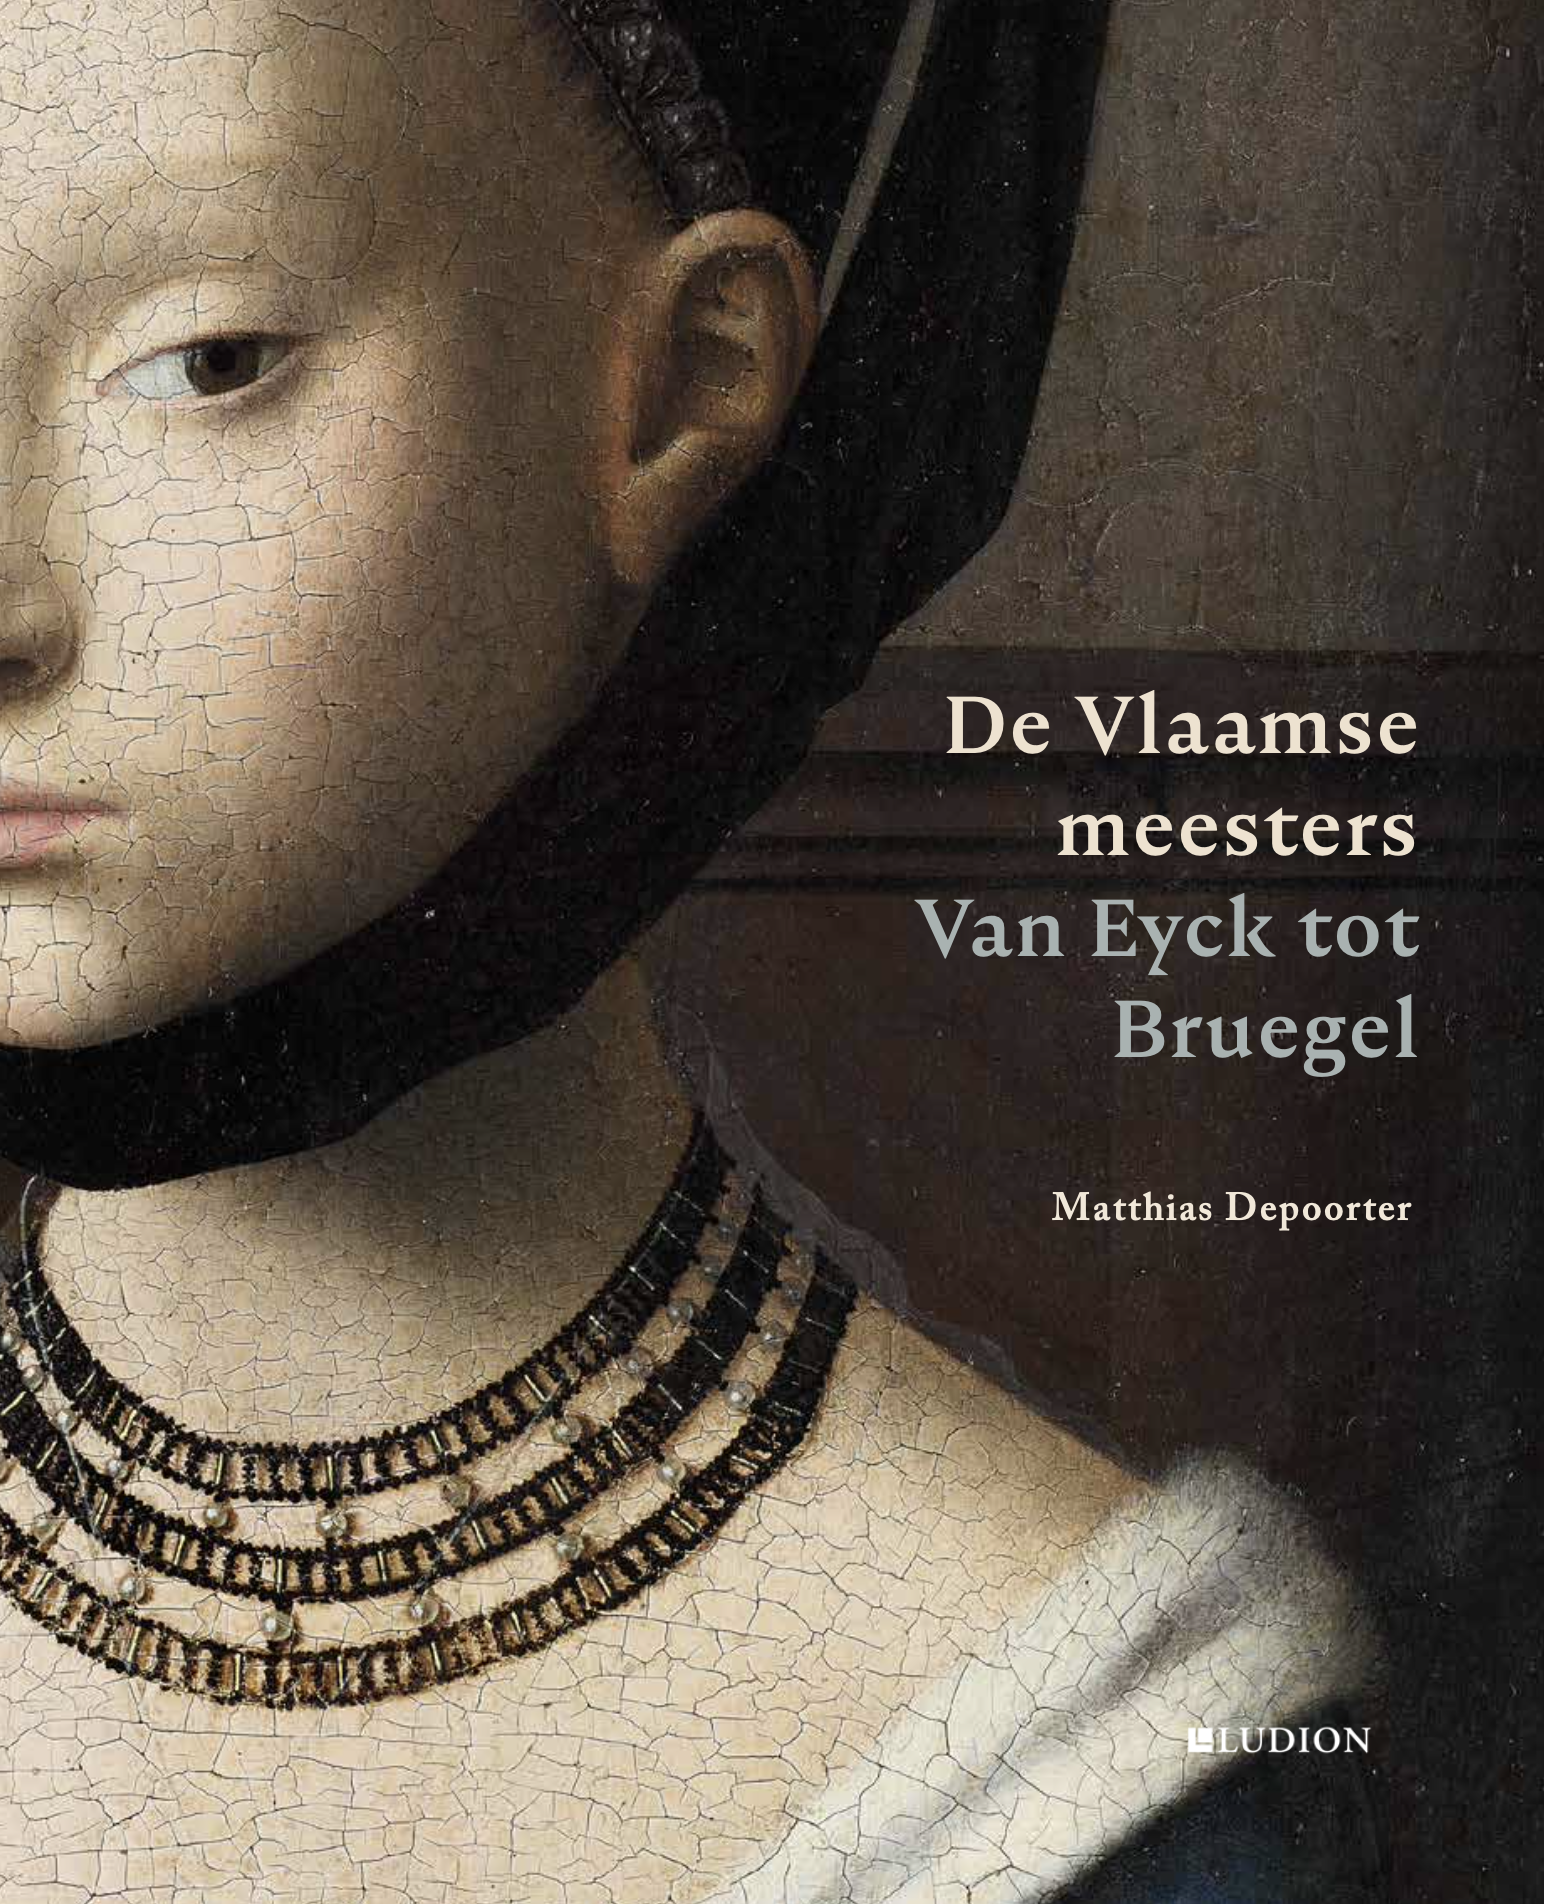 De Vlaamse meesters. Van Eyck tot Bruegel